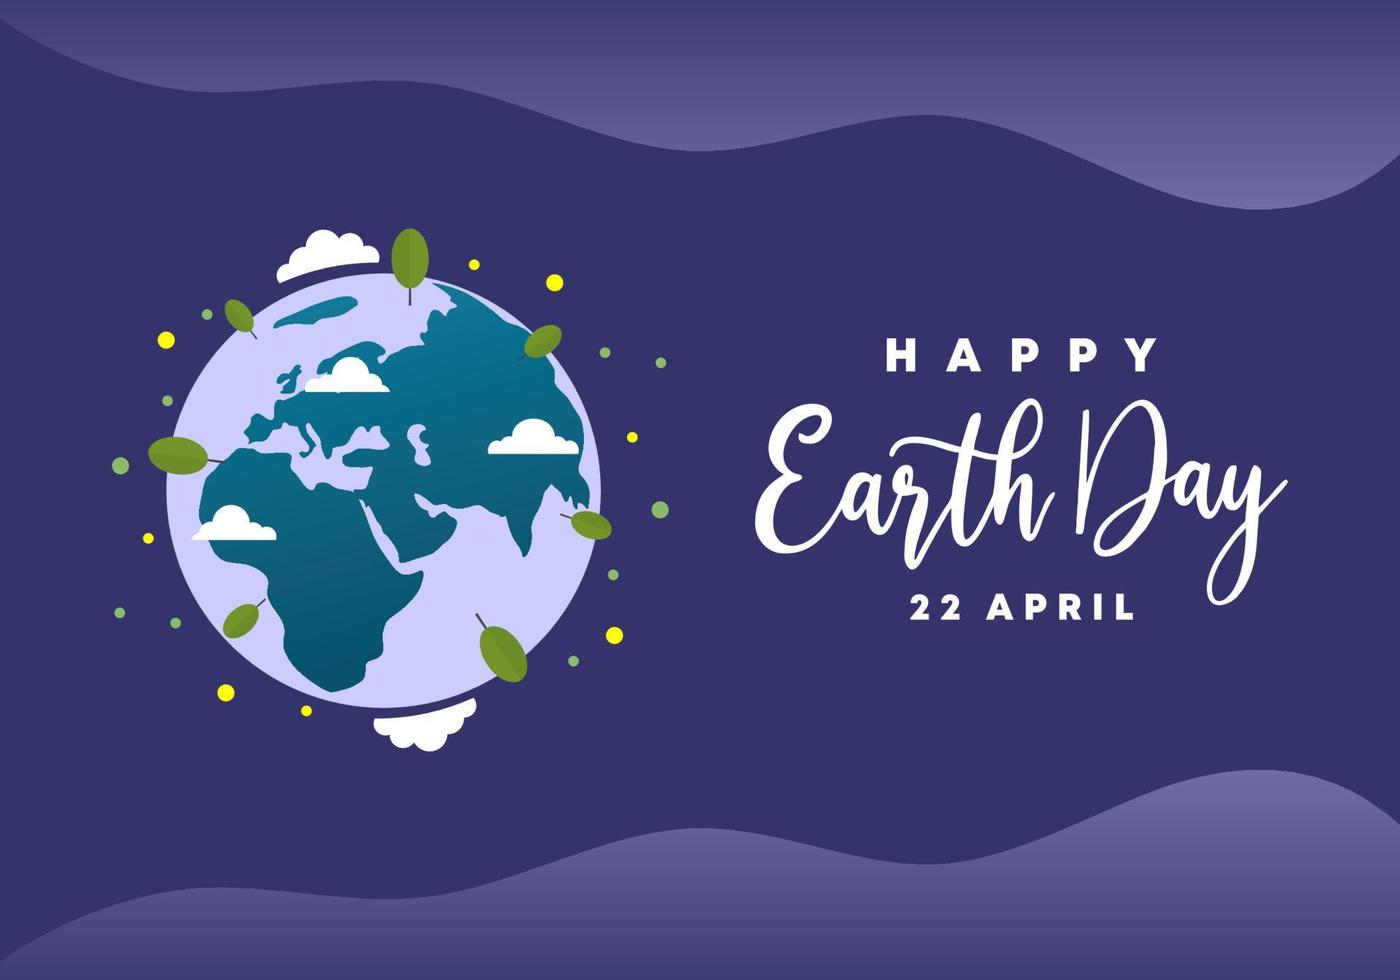 cartaz do dia da terra feliz com celebração do globo azul em 22 de abril. vetor